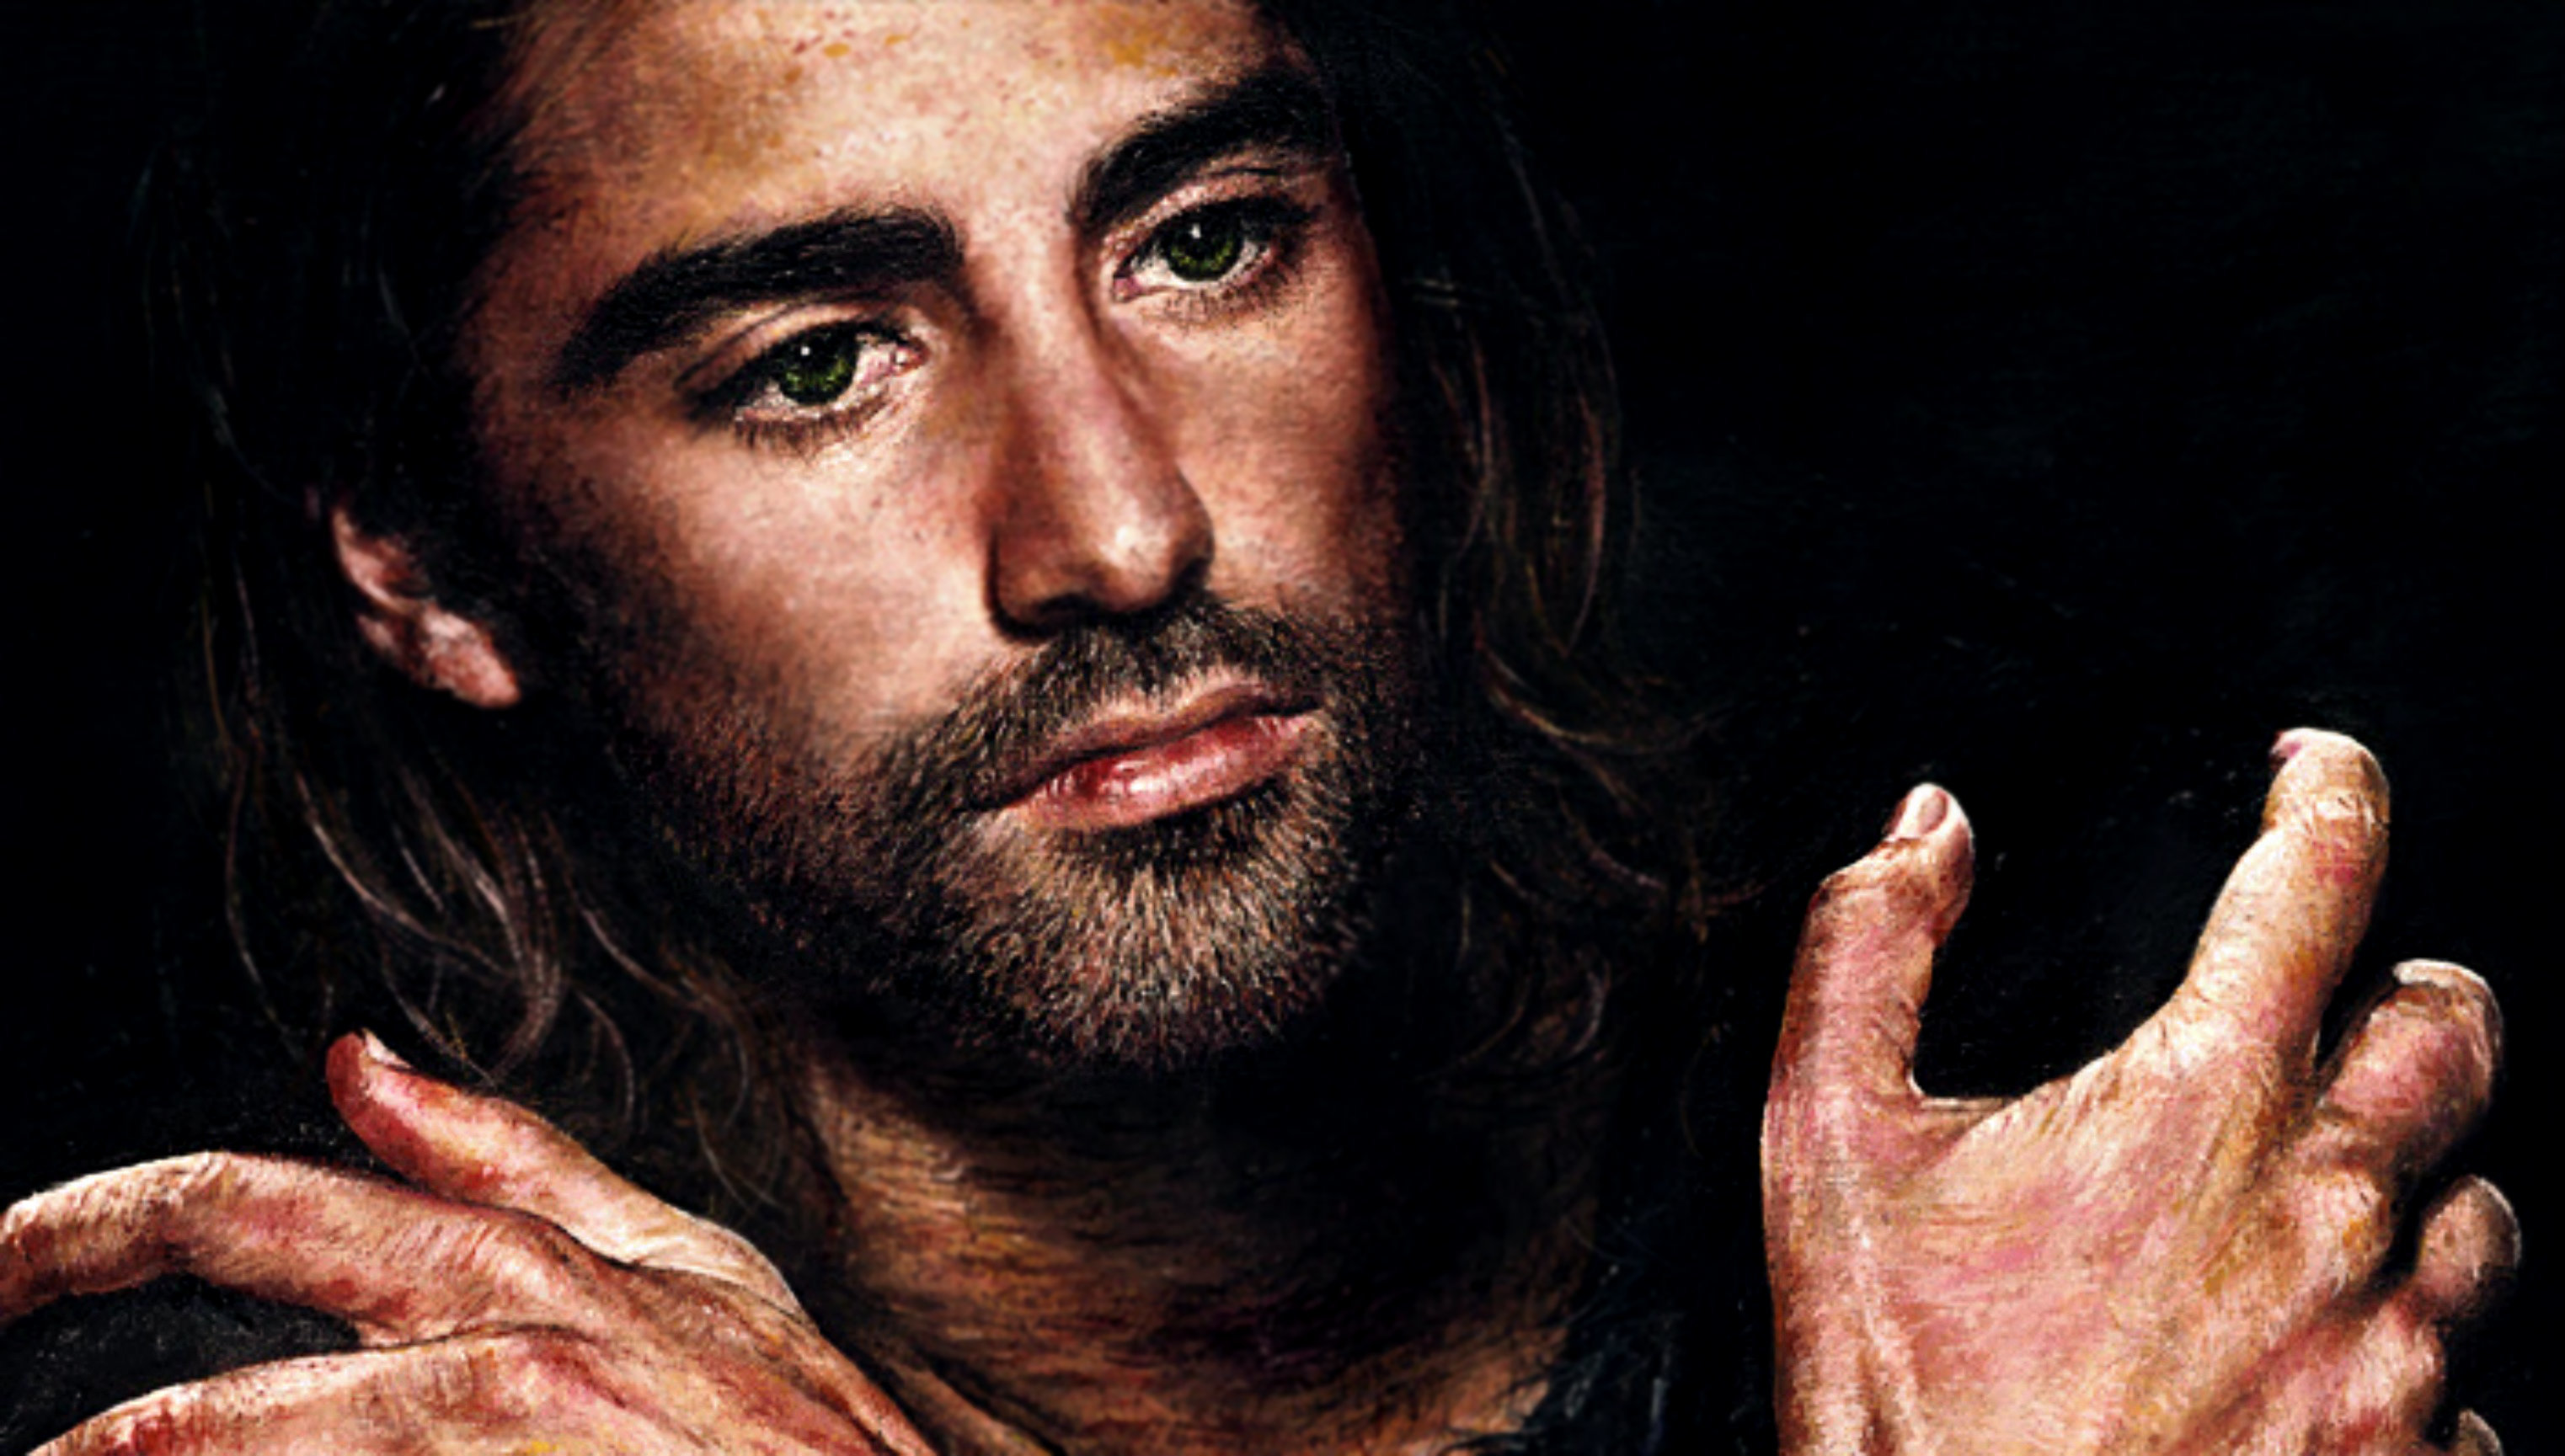 Akiane Painting Of Jesus Christ